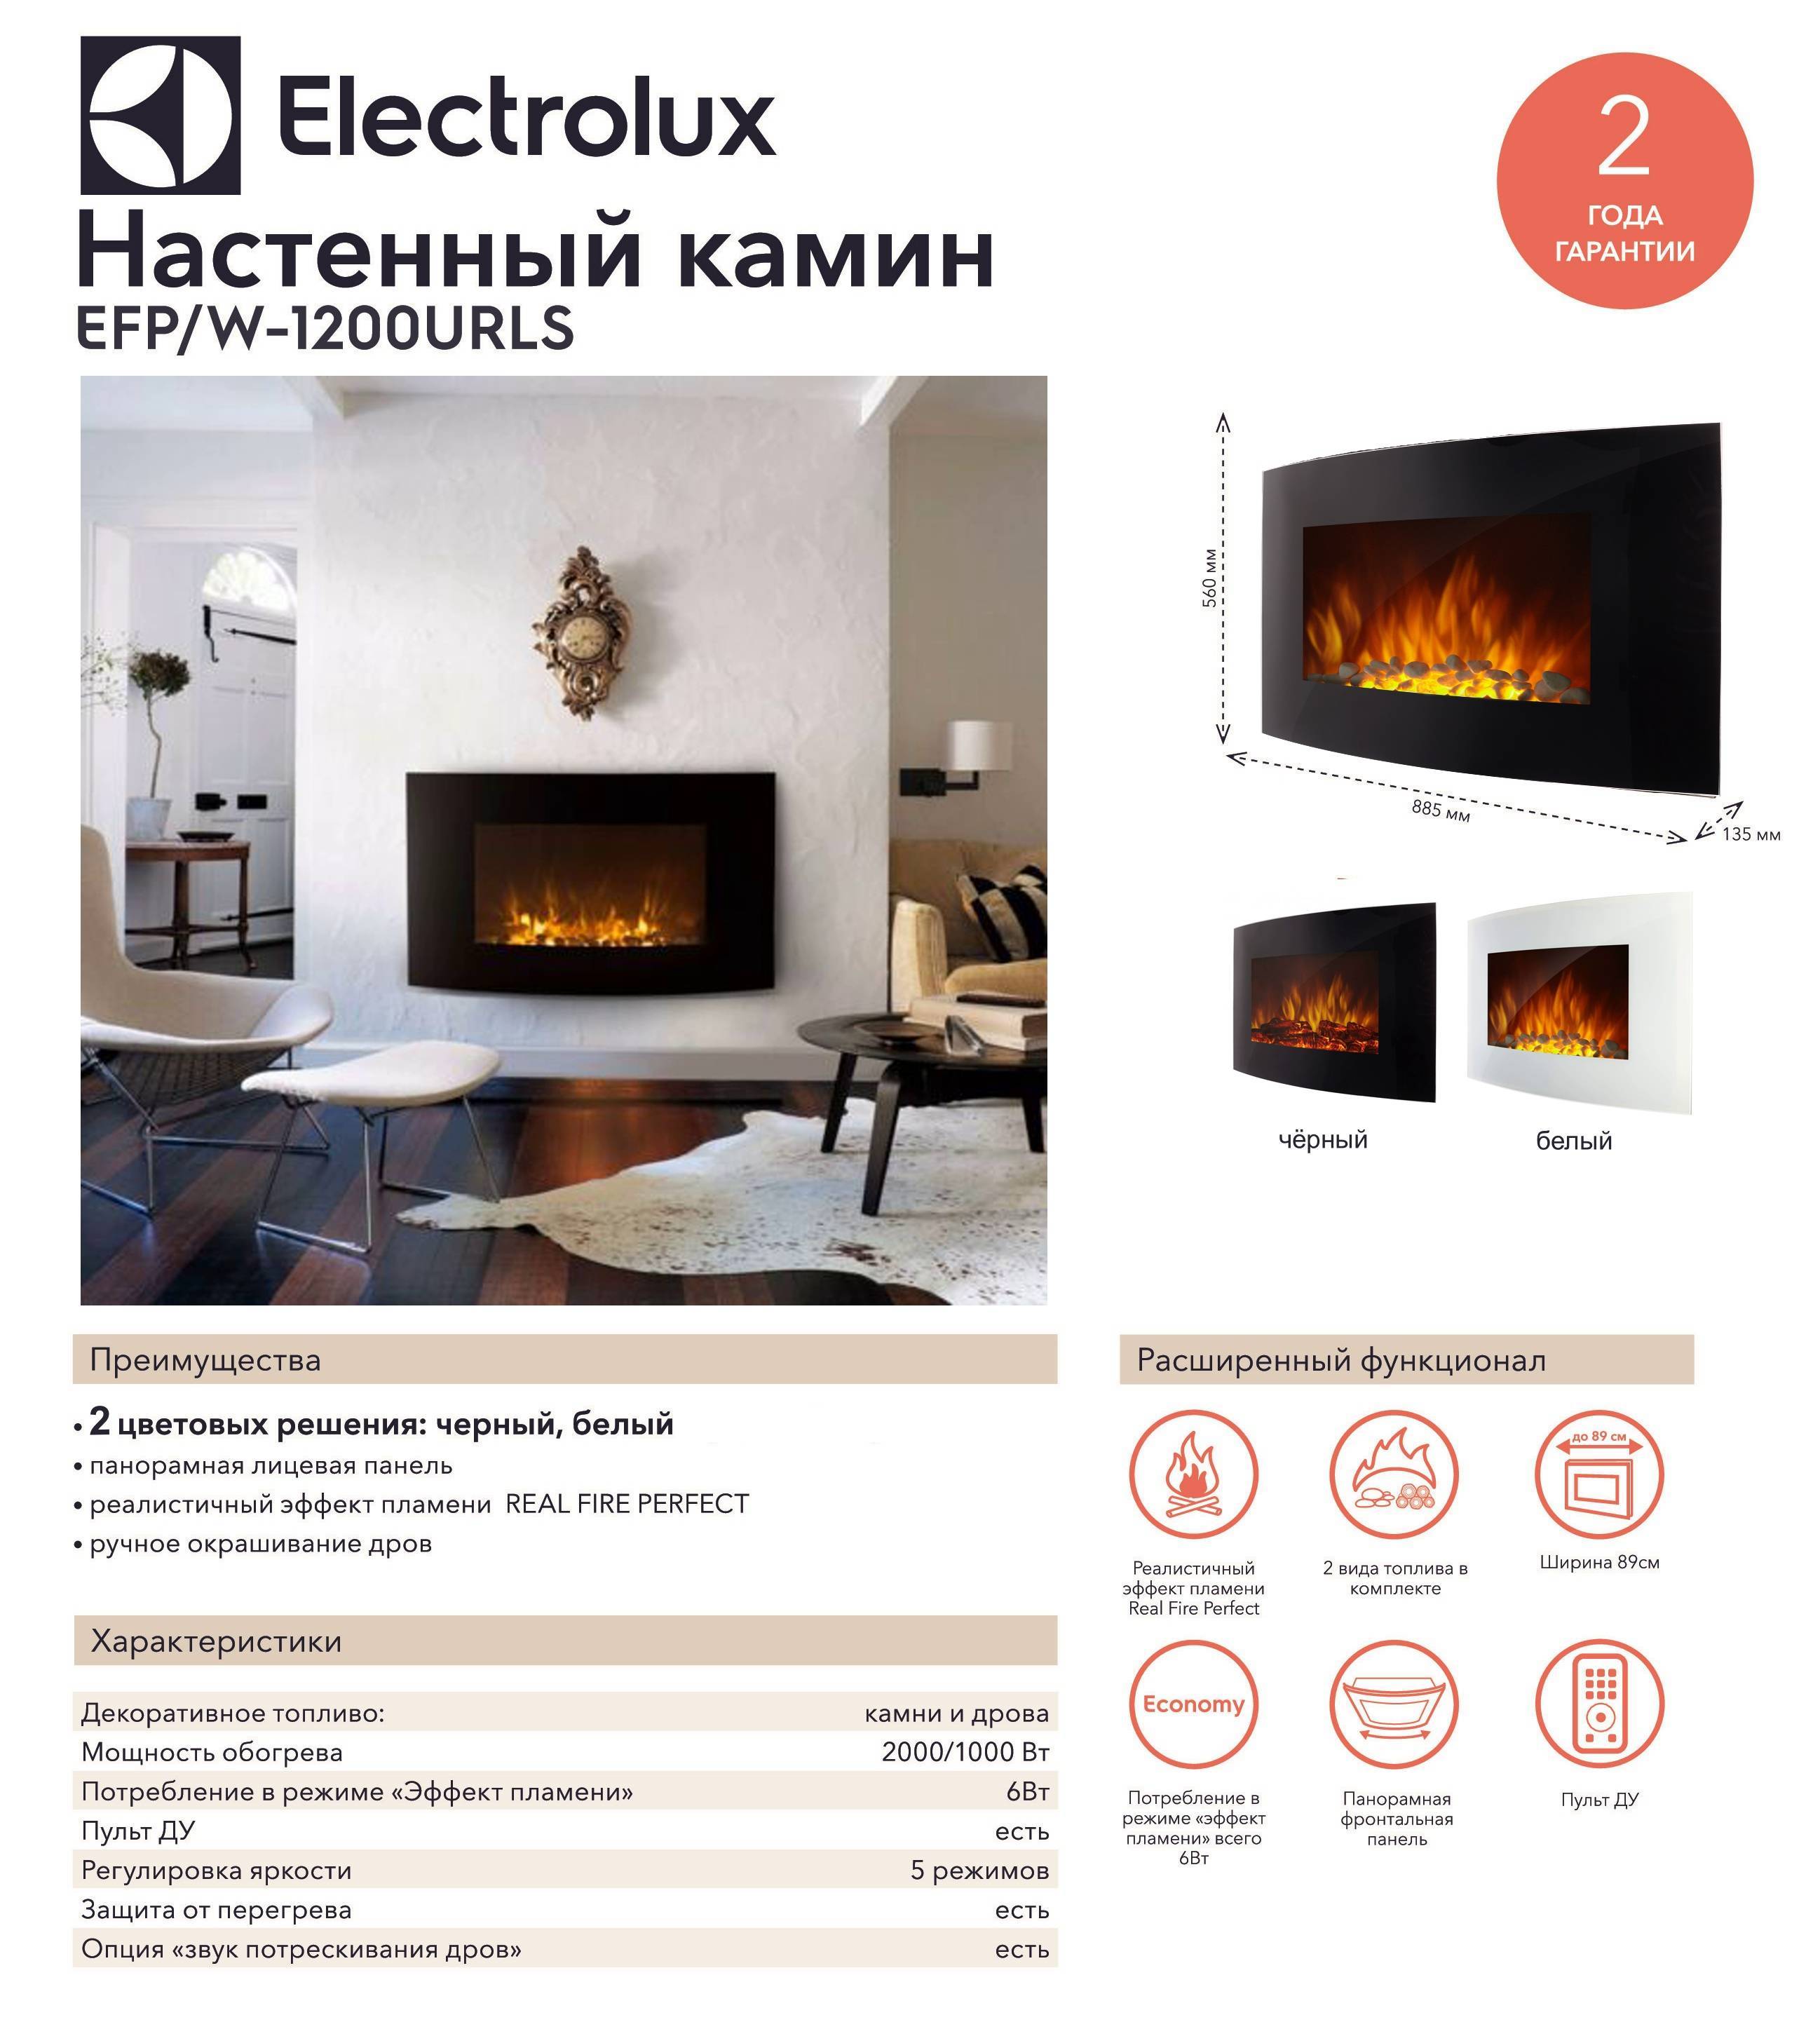 Как выбрать настенный электрокамин с эффектом живого огня: для квартиры, для дома, для дачи, виды, характеристики, критерии выбора, рейтинг 2021